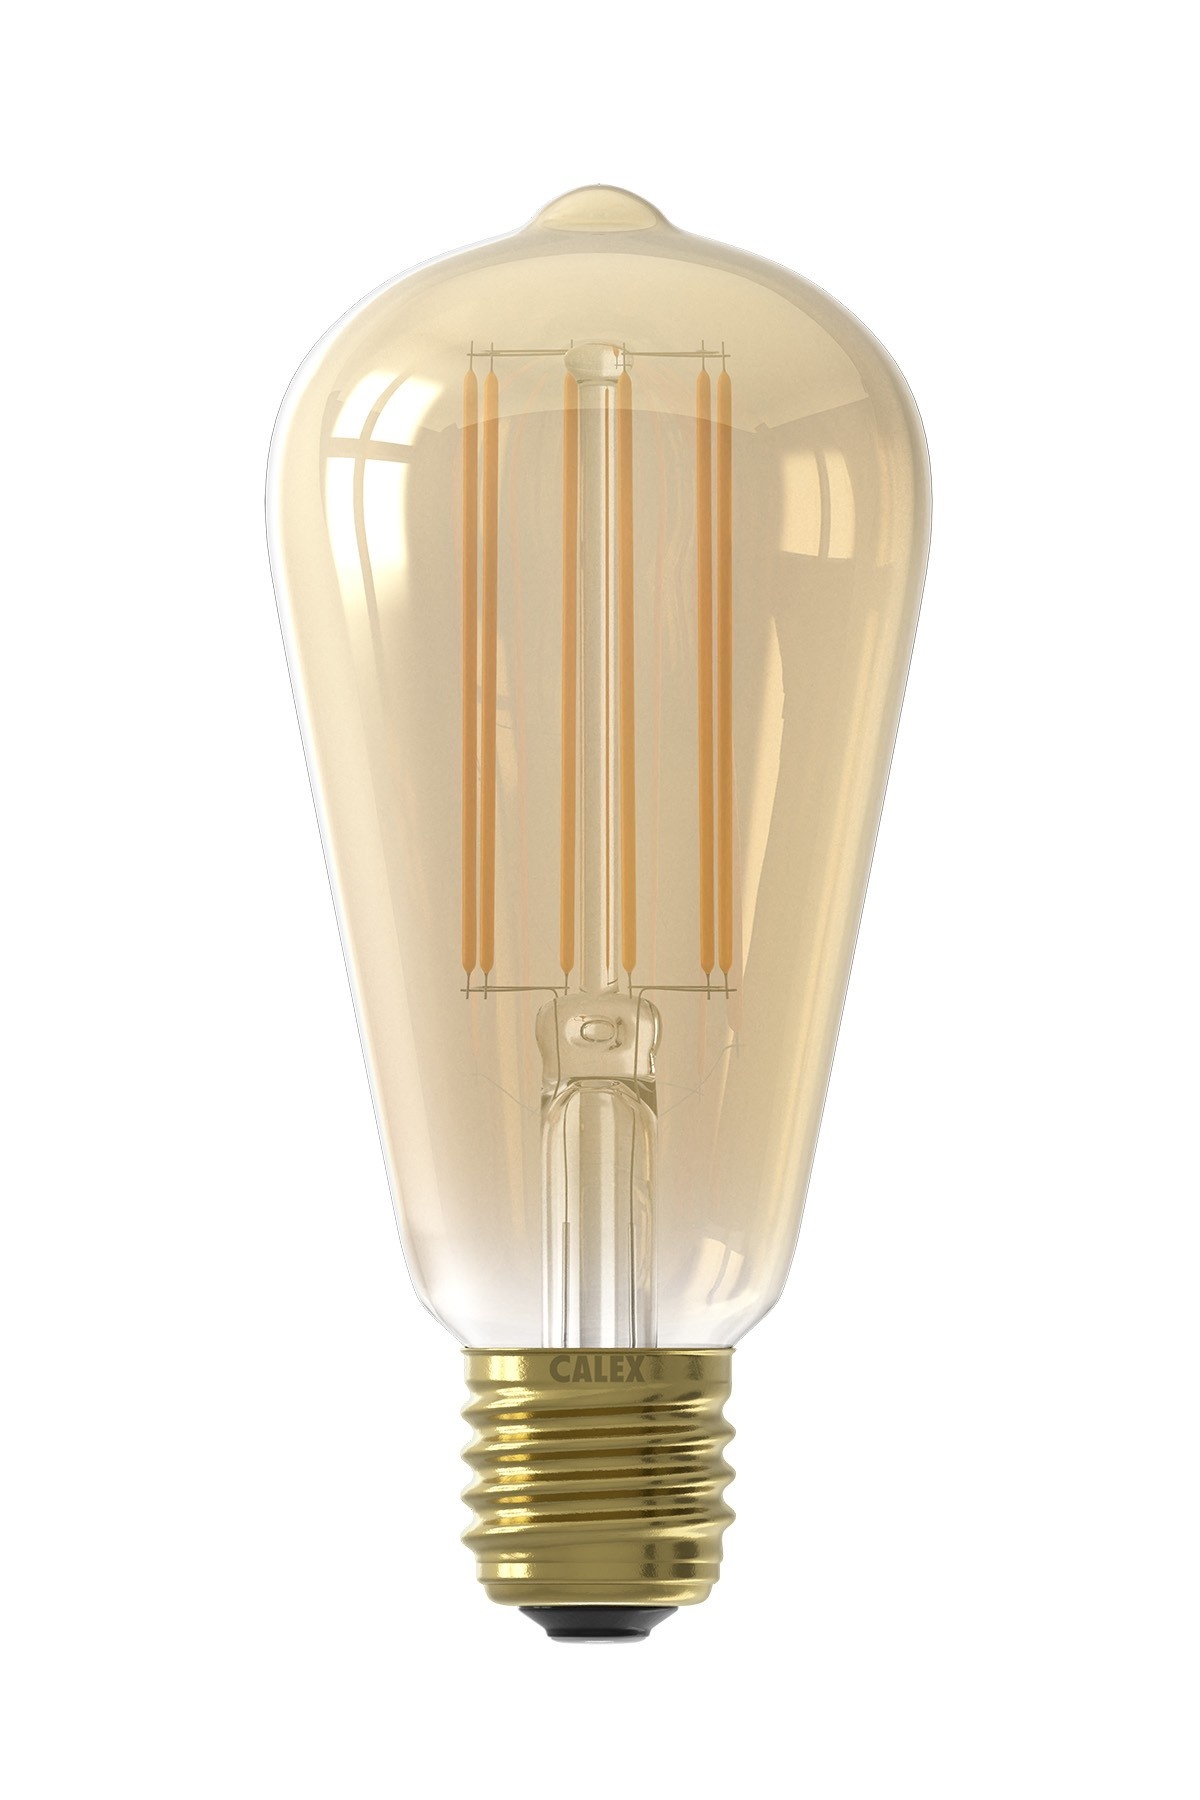 iets Dokter Ga trouwen Calex Rustiek Filament Lamp met Schemersensor - E27 - 400 Lm - Goud -  Lightexpert.nl